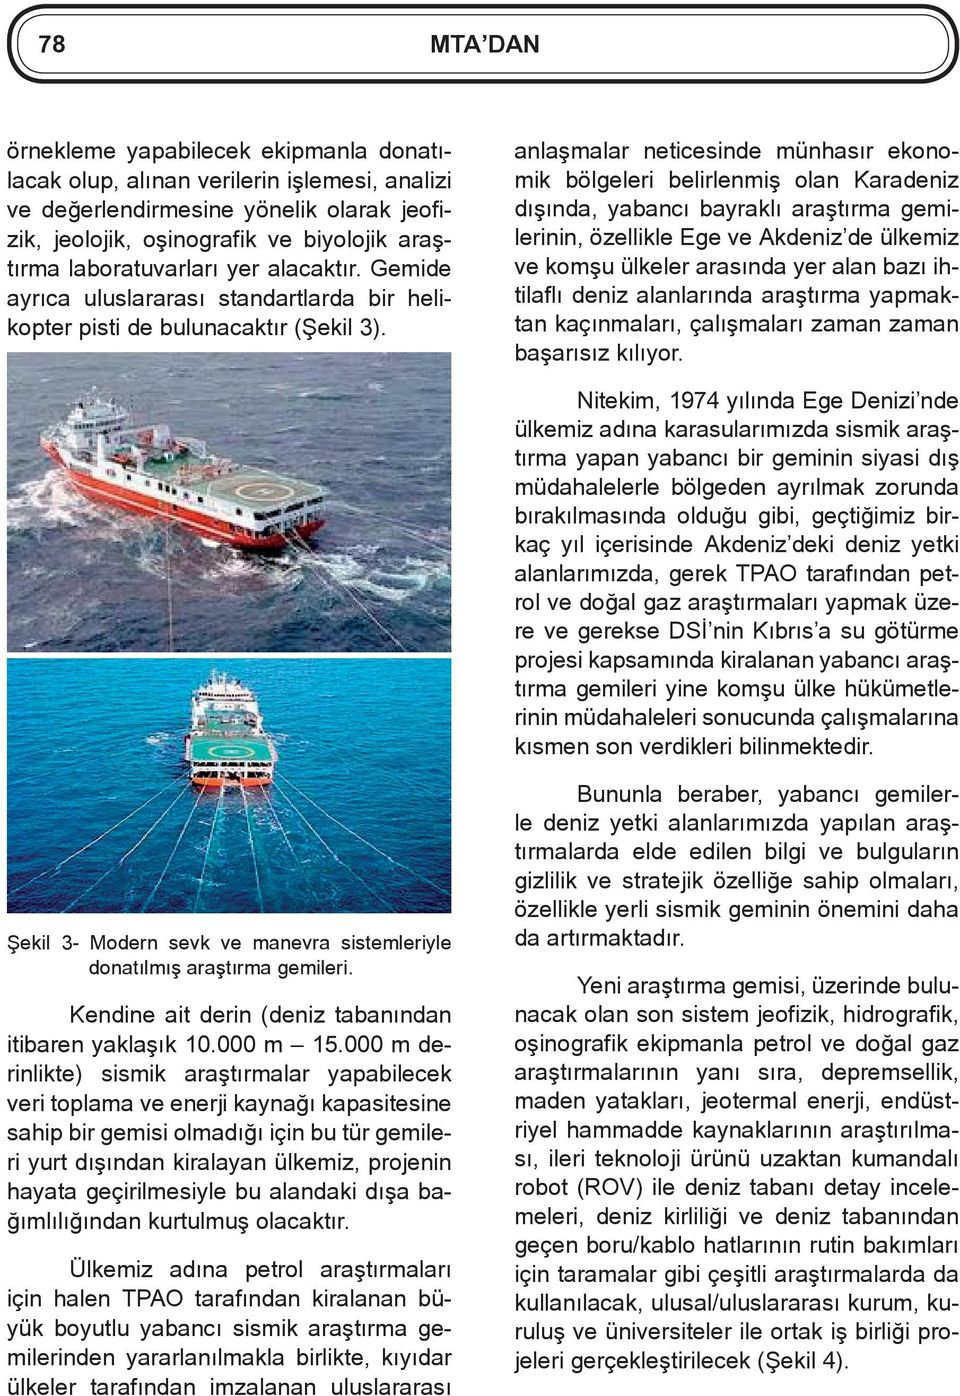 anlaşmalar neticesinde münhasır ekonomik bölgeleri belirlenmiş olan Karadeniz dışında, yabancı bayraklı araştırma gemilerinin, özellikle Ege ve Akdeniz de ülkemiz ve komşu ülkeler arasında yer alan